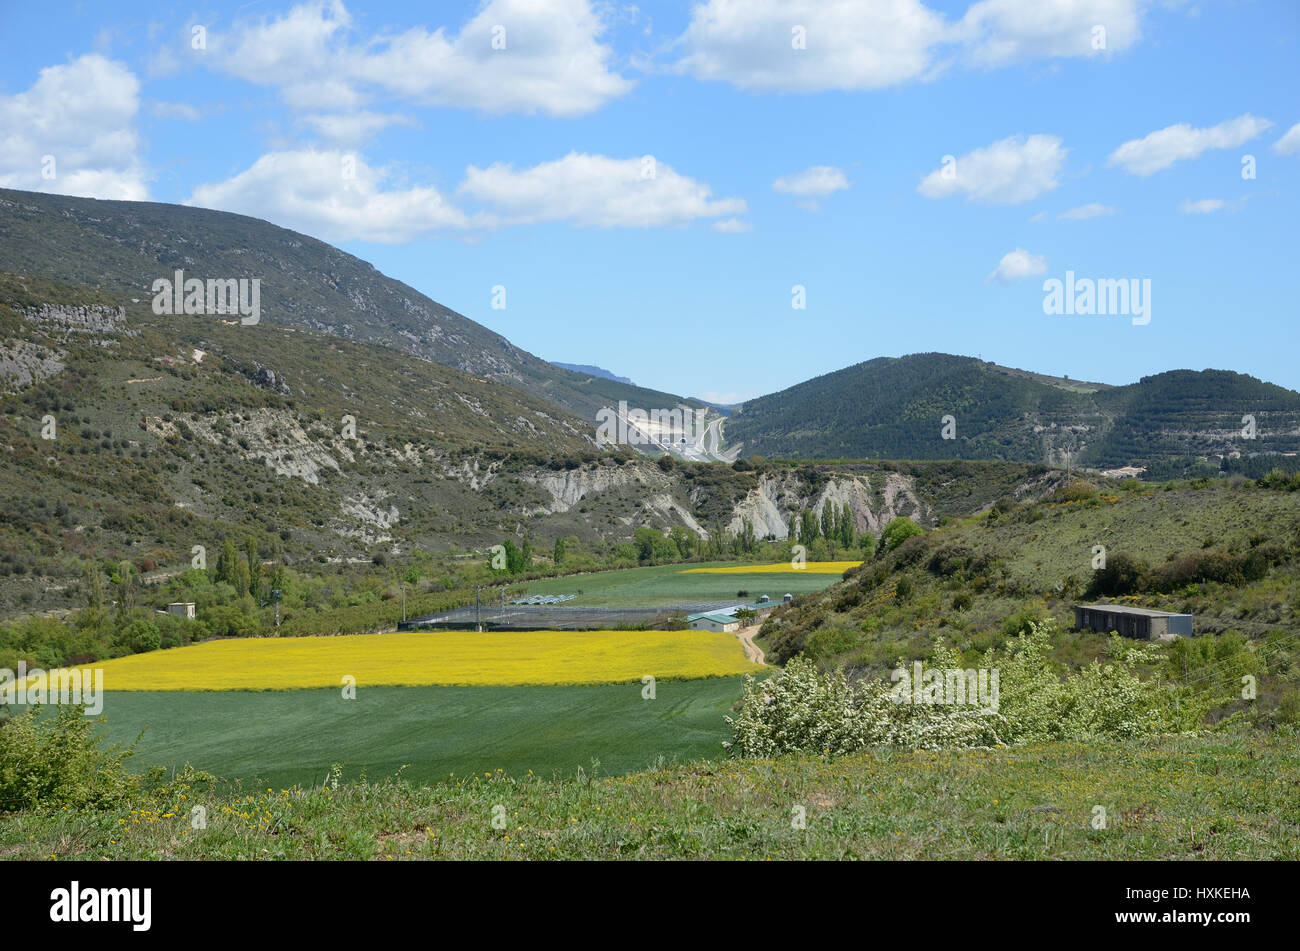 Una stretta banda di campi agricoli è coltivato tra le zone di montagna e di collina ricoperta di vegetazione lussureggiante nella regione spagnola Navarra. Foto Stock